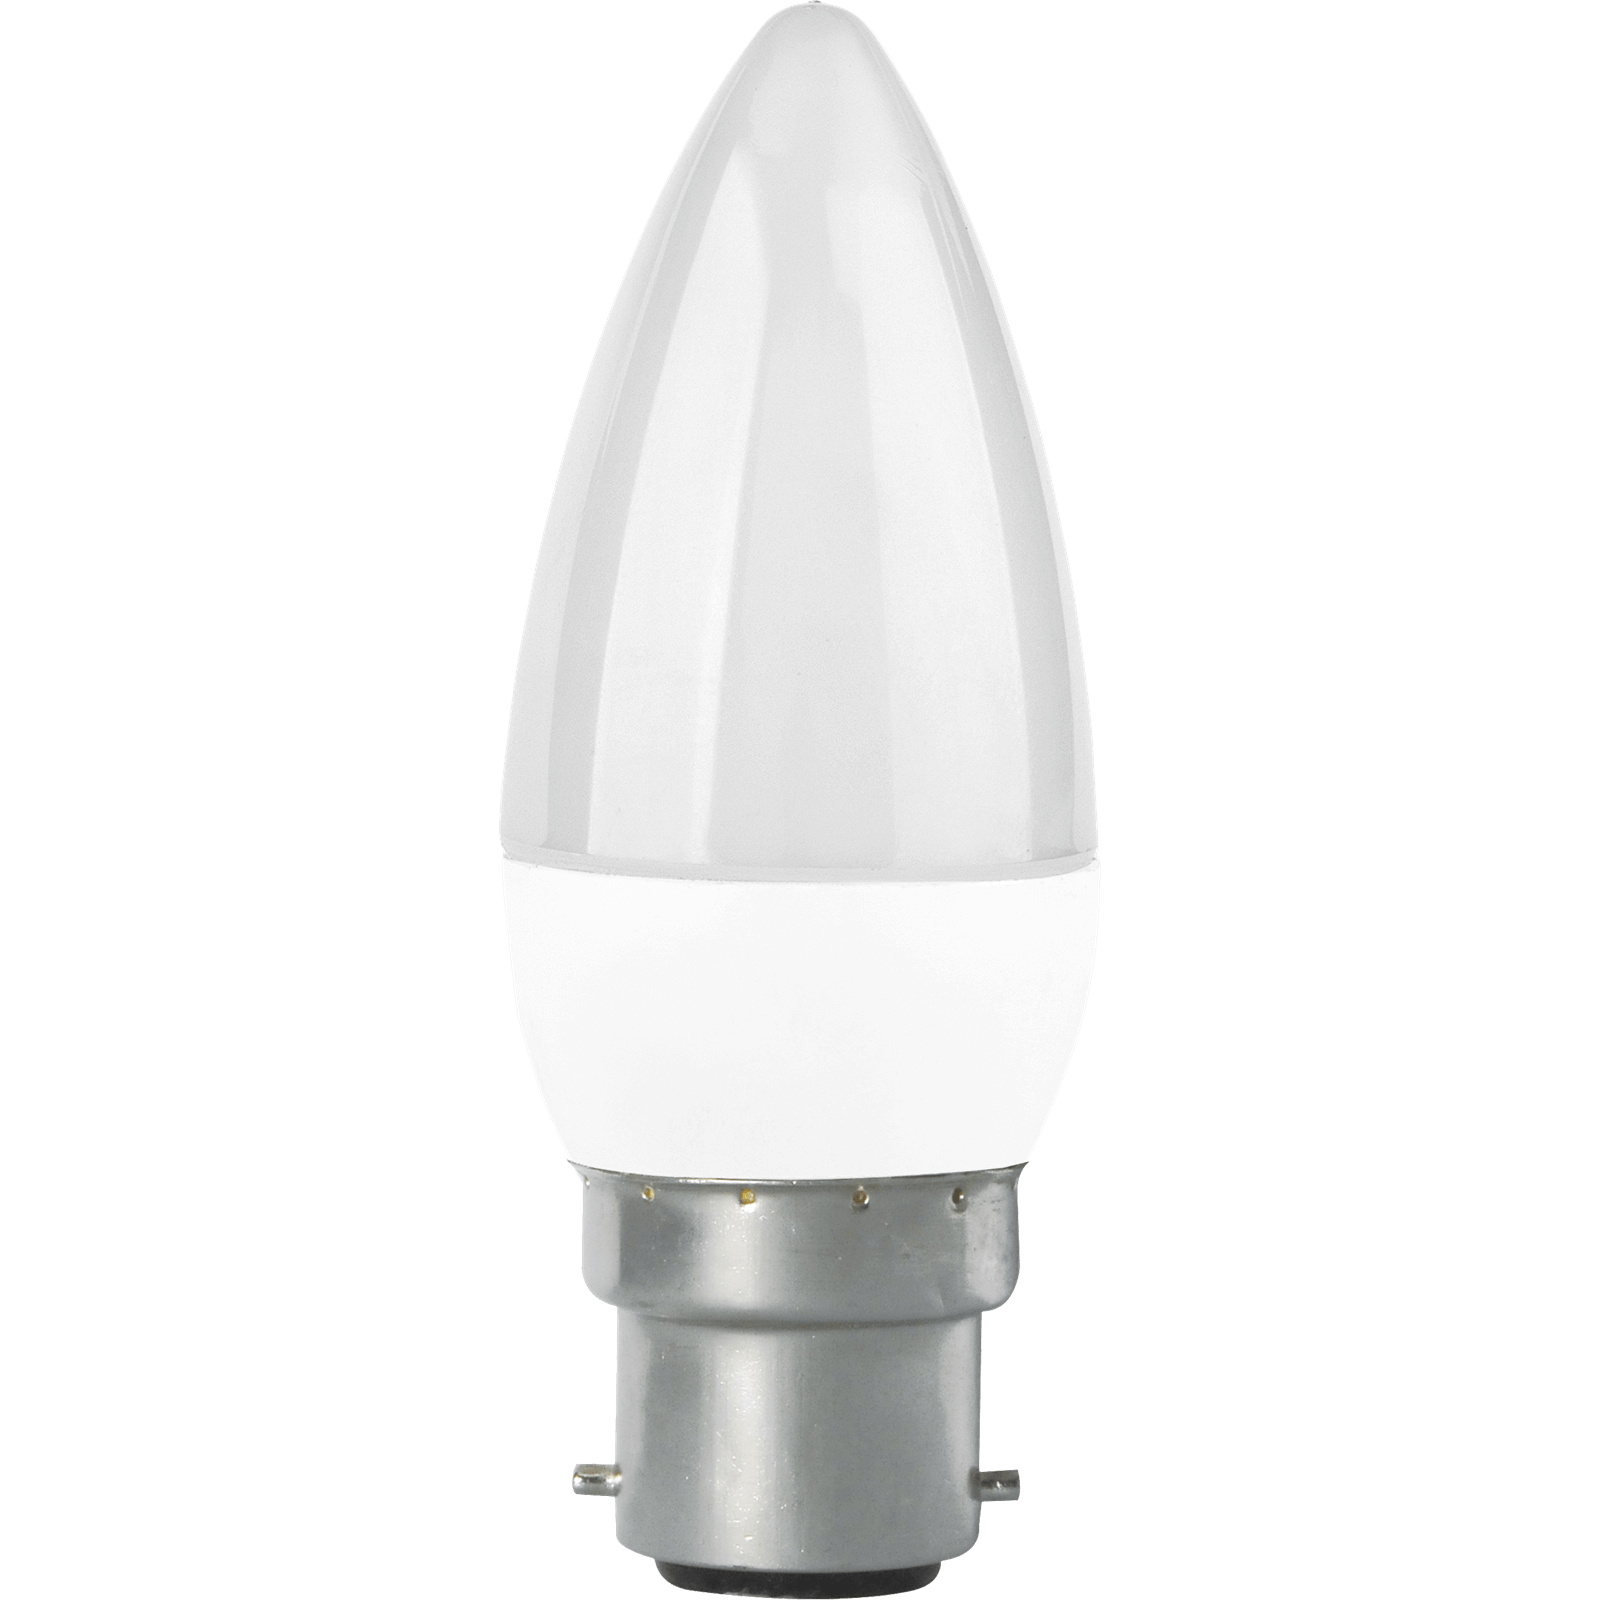 TCP LED Candle 60W B22 Coat Warm Light Bulb - 2 pack